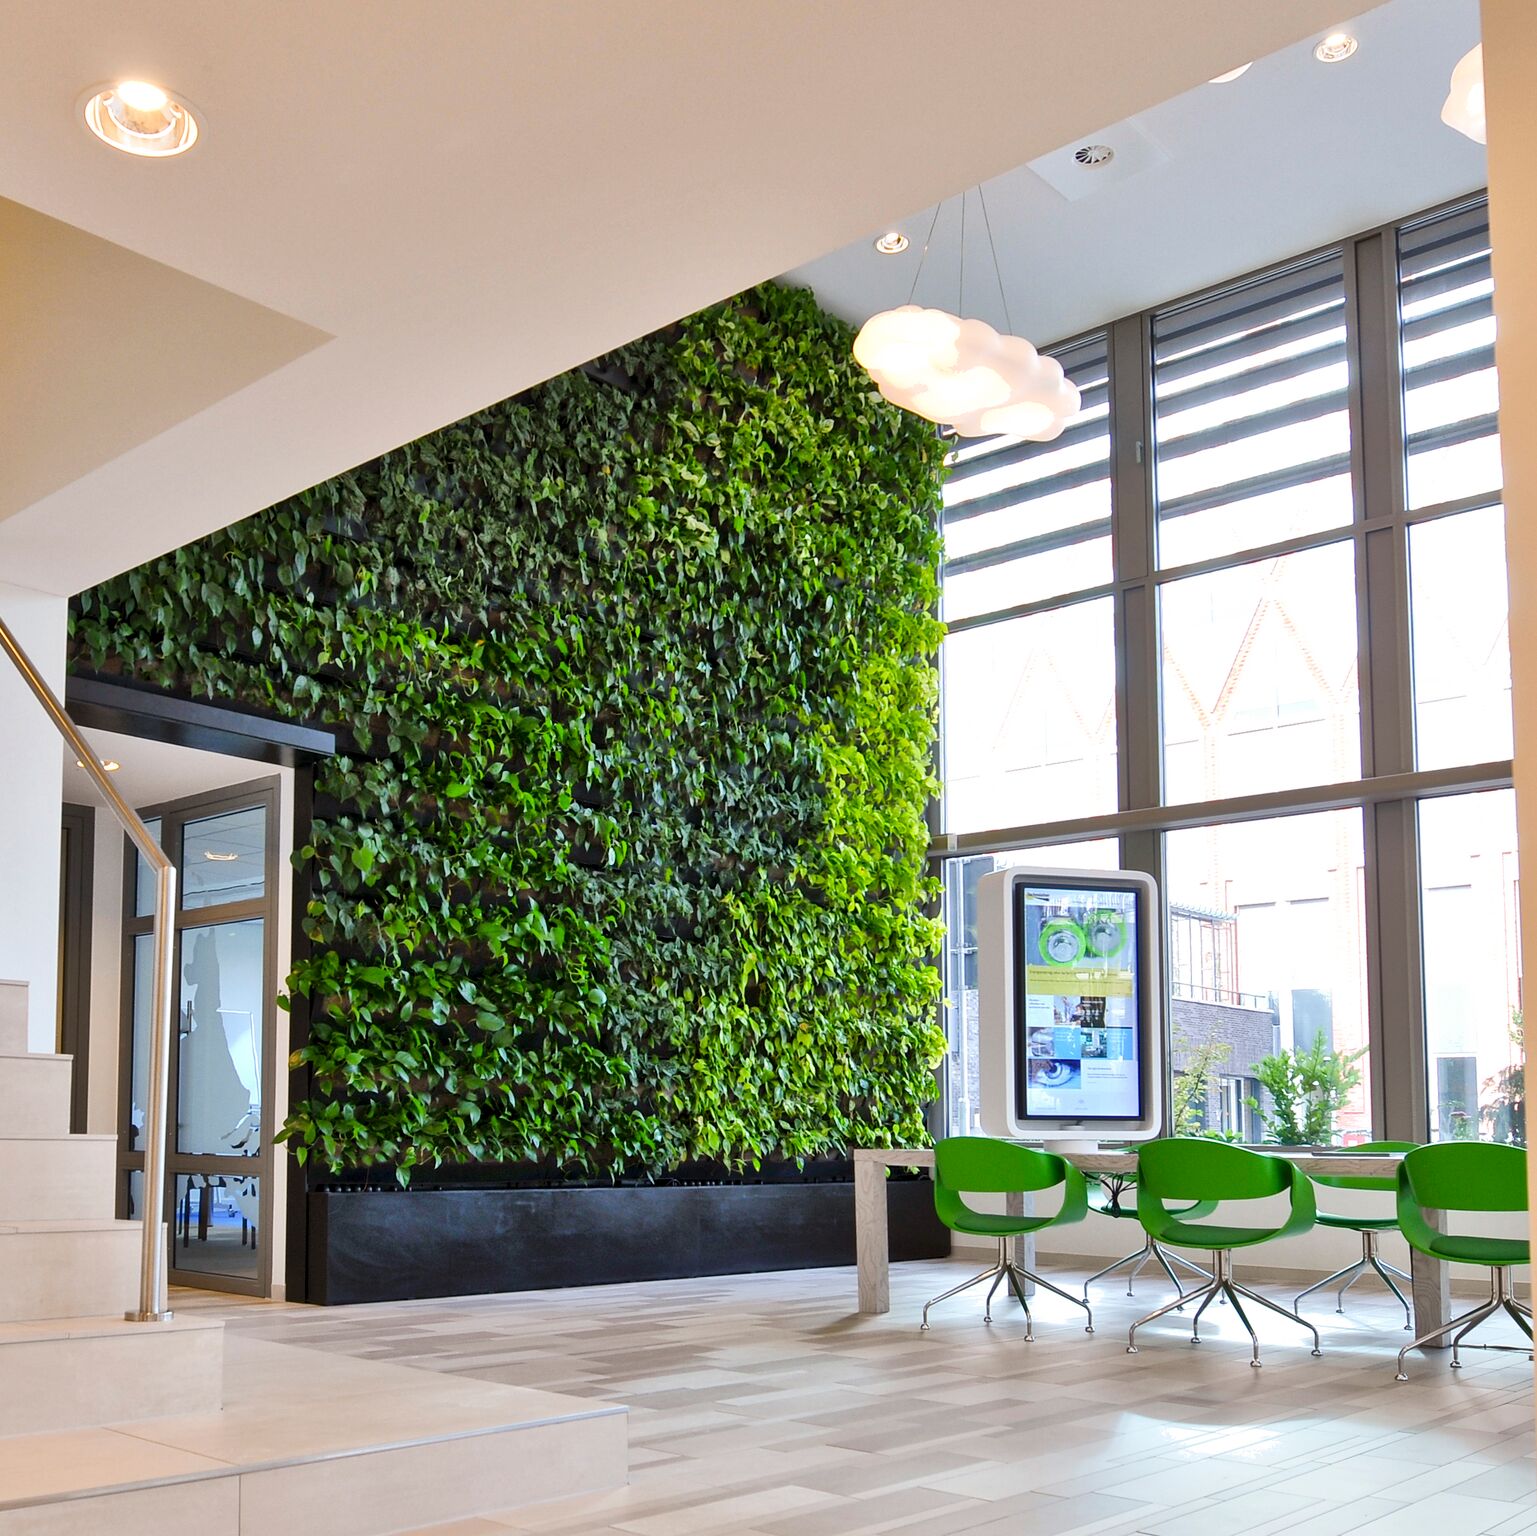 Озеленение офиса компании под ключ - цены на вертикальное озеленение